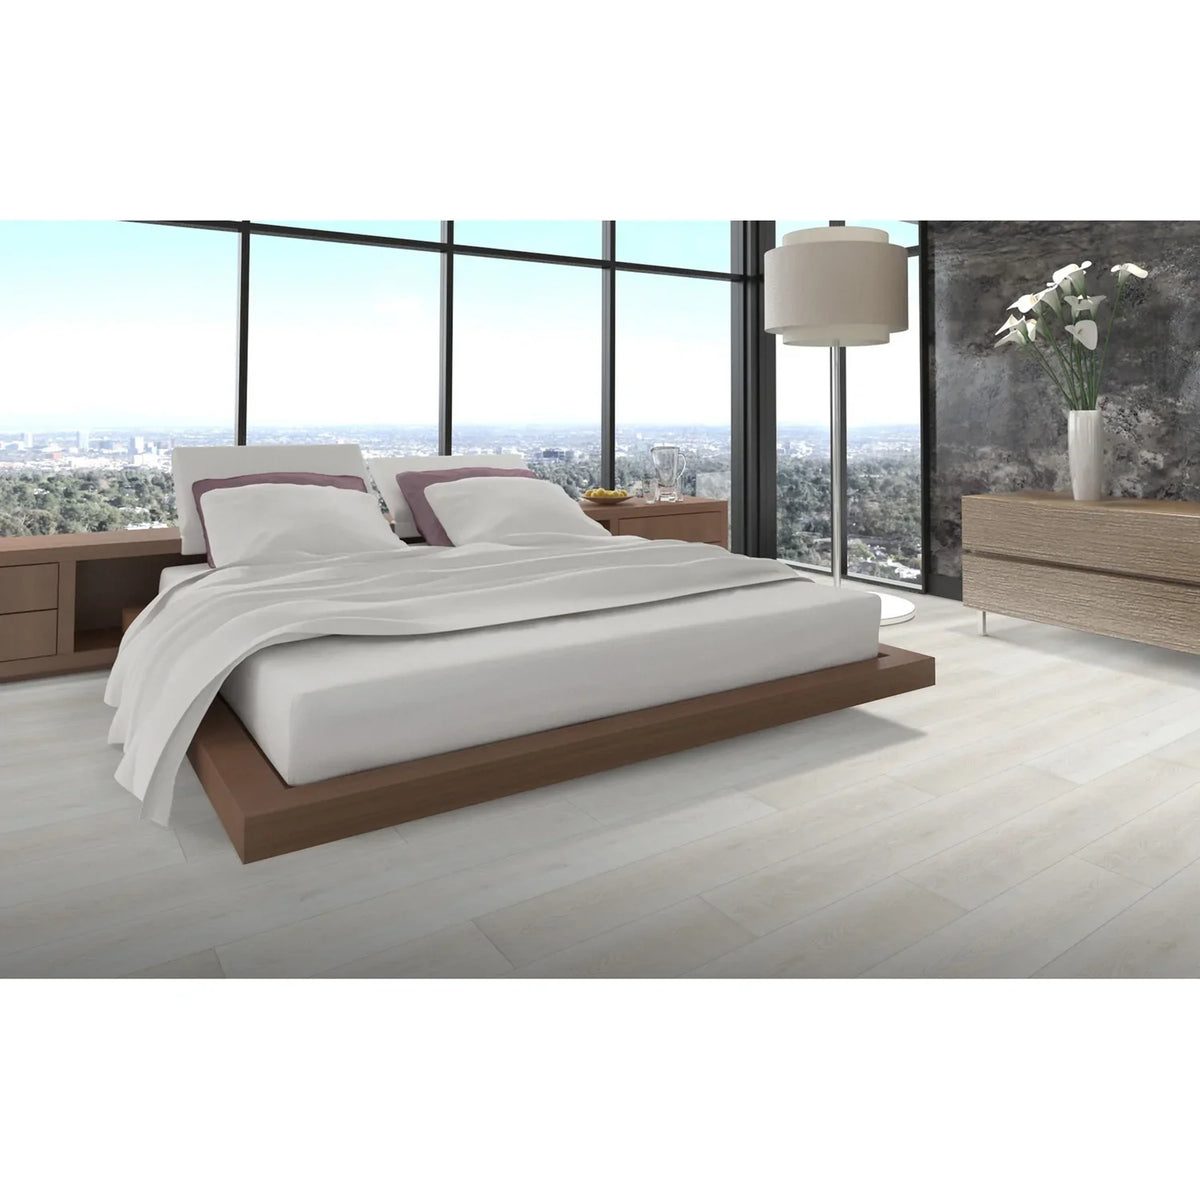 Tesoro - Timberlux Luxury Engineered Planks - Beachwood Room Scene